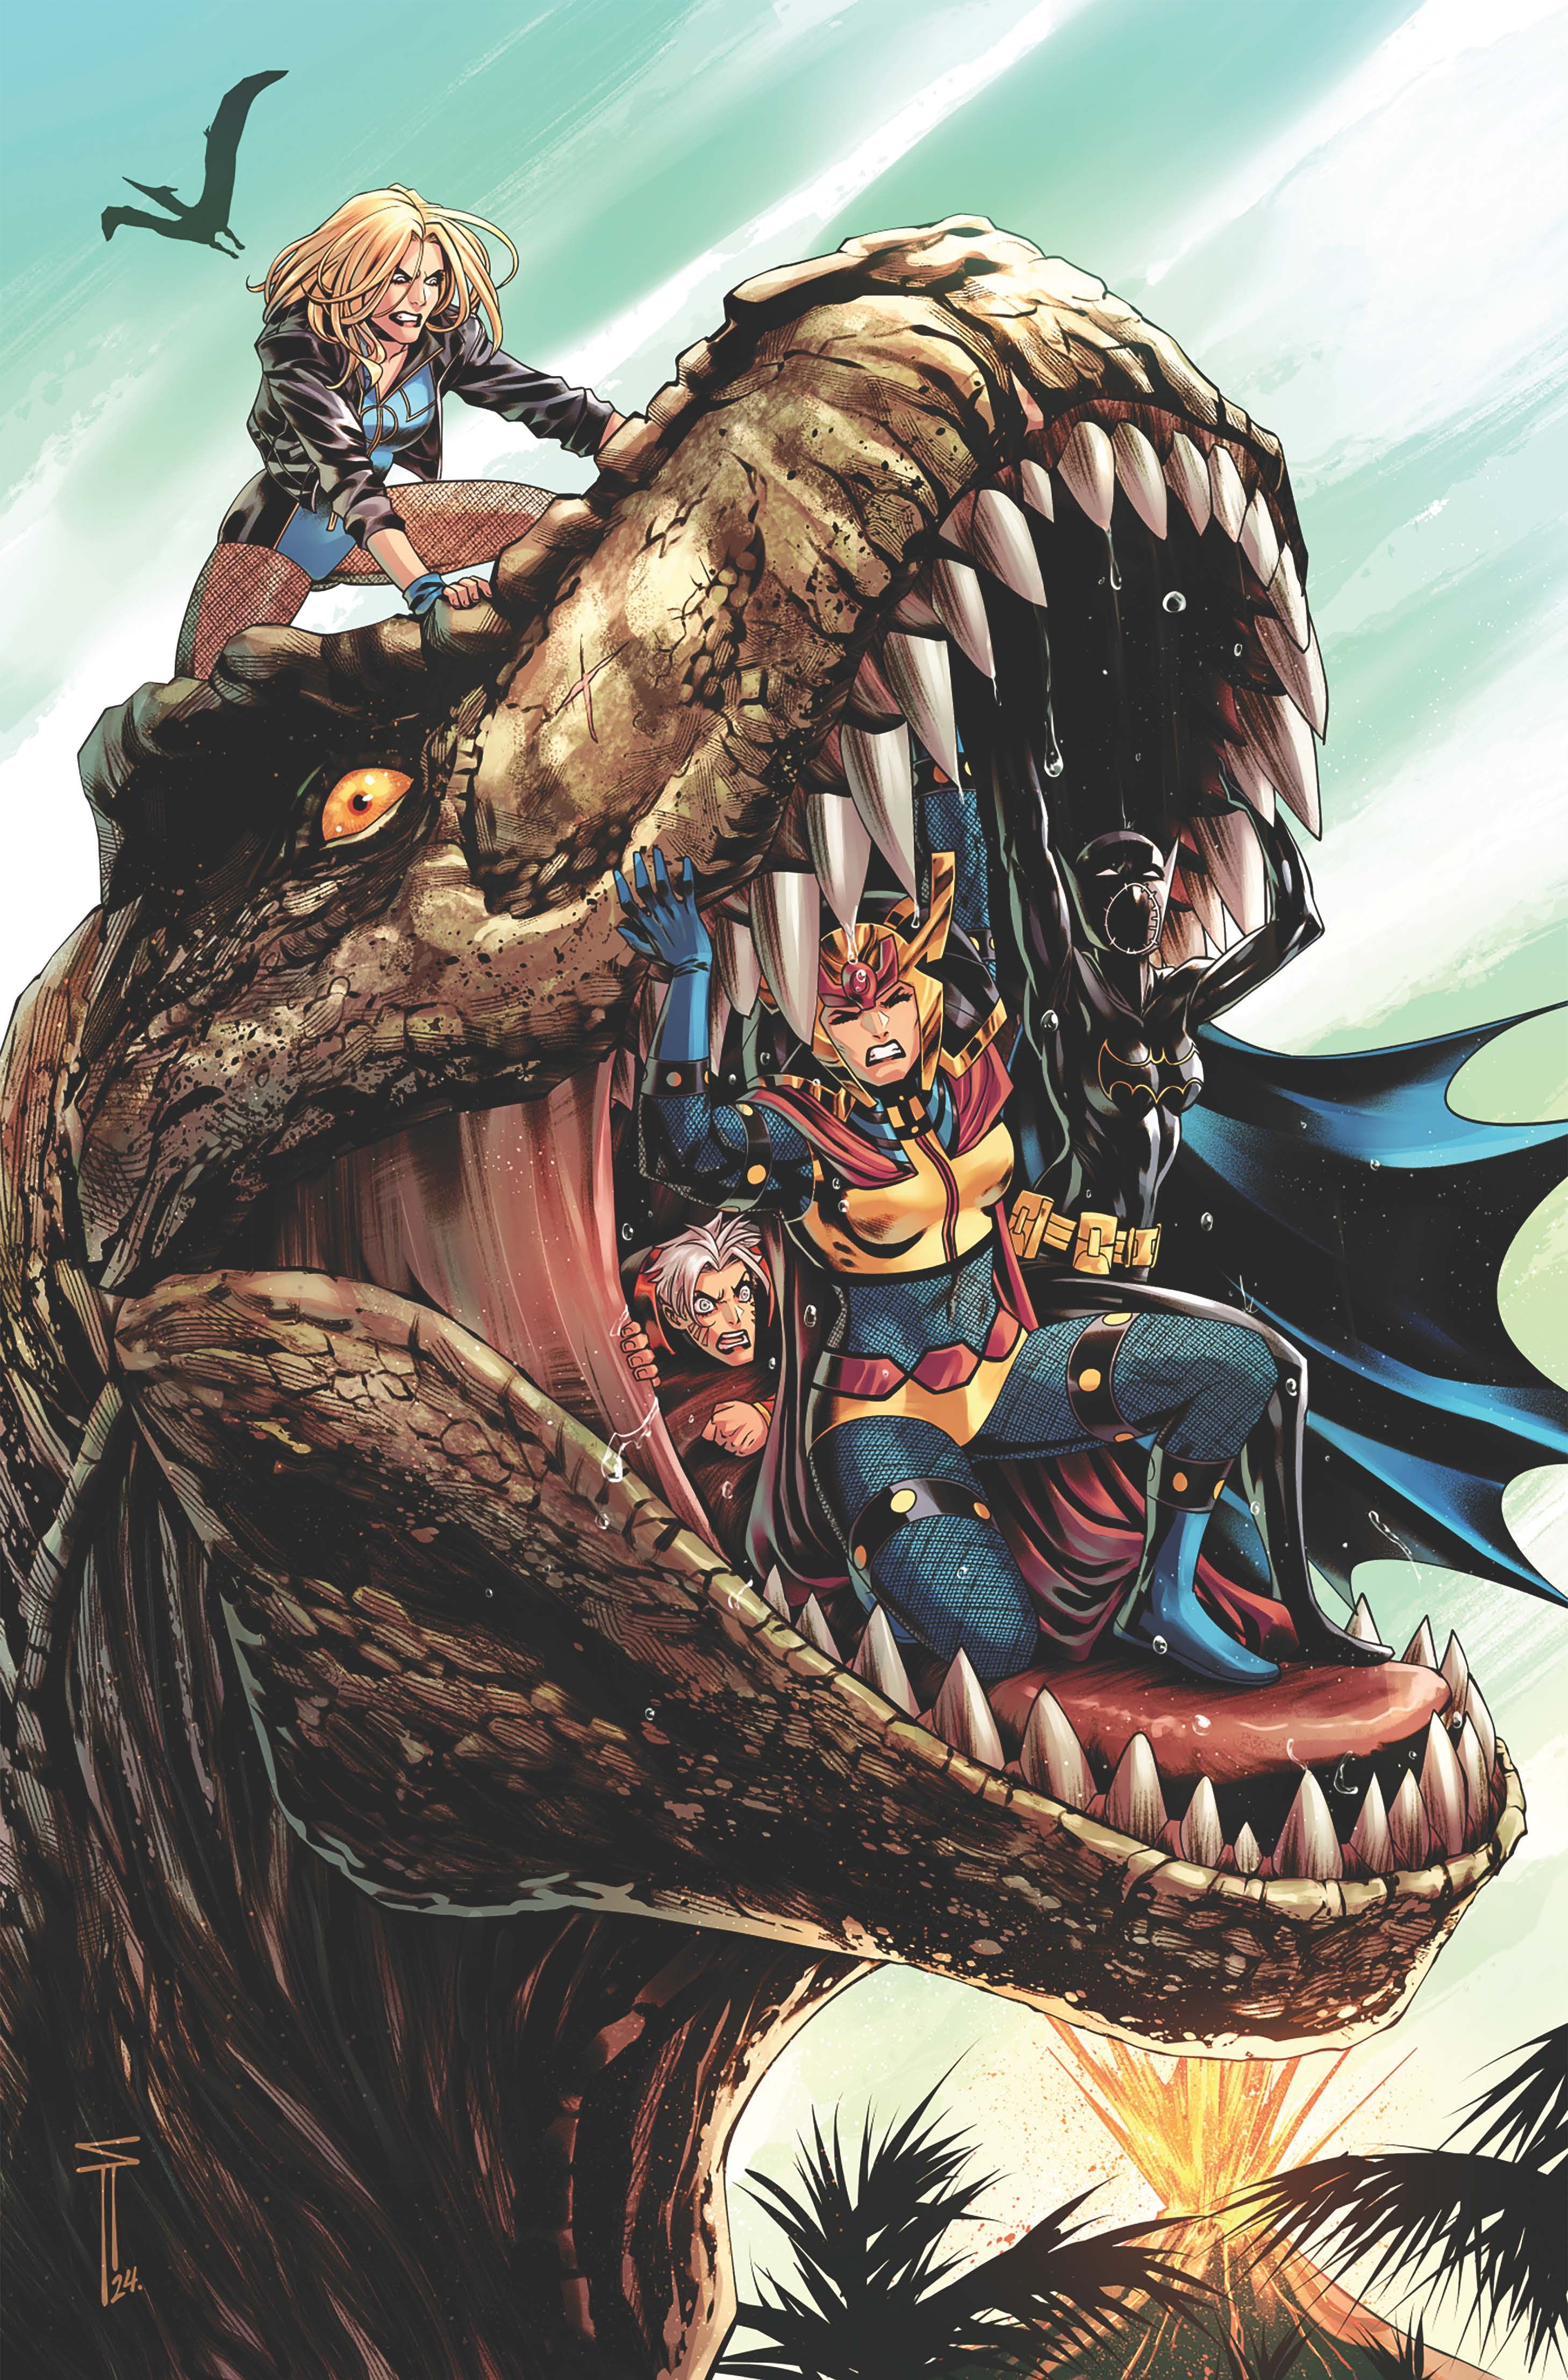 Capa da variante Acuna de Birds of Prey 11: Big Barda, Batgirl e Zealot dentro da boca de um dinossauro enquanto Canário Negro está em sua cabeça.